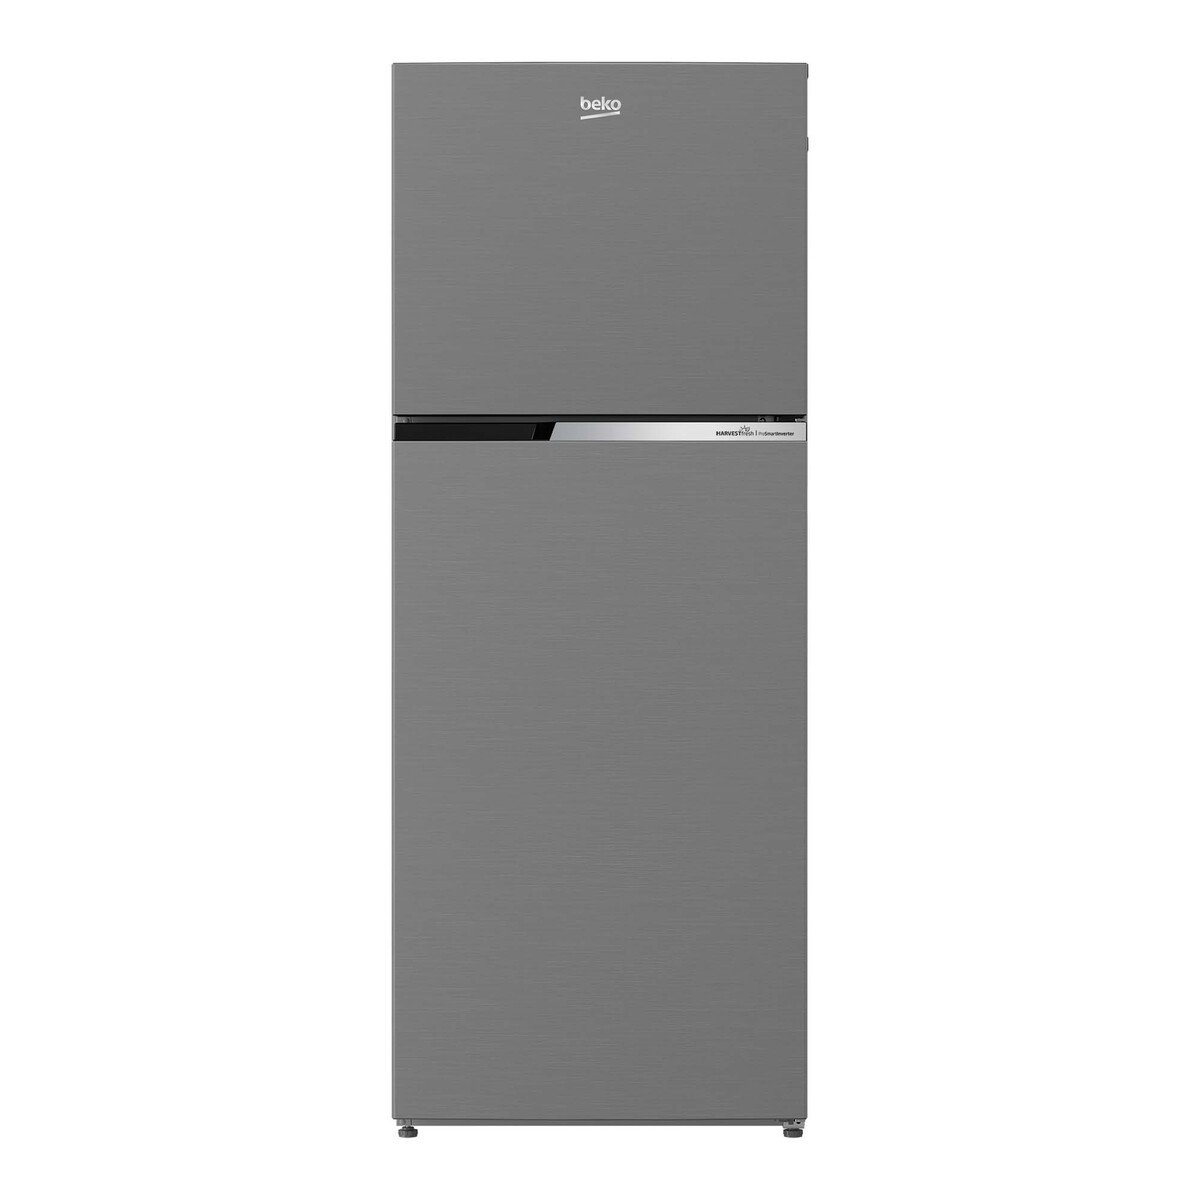 Buy Beko Double Door Refrigerator RDNT401XS 375LTR Online at Best Price | Dbl.Door Refrigeratr | Lulu UAE in UAE